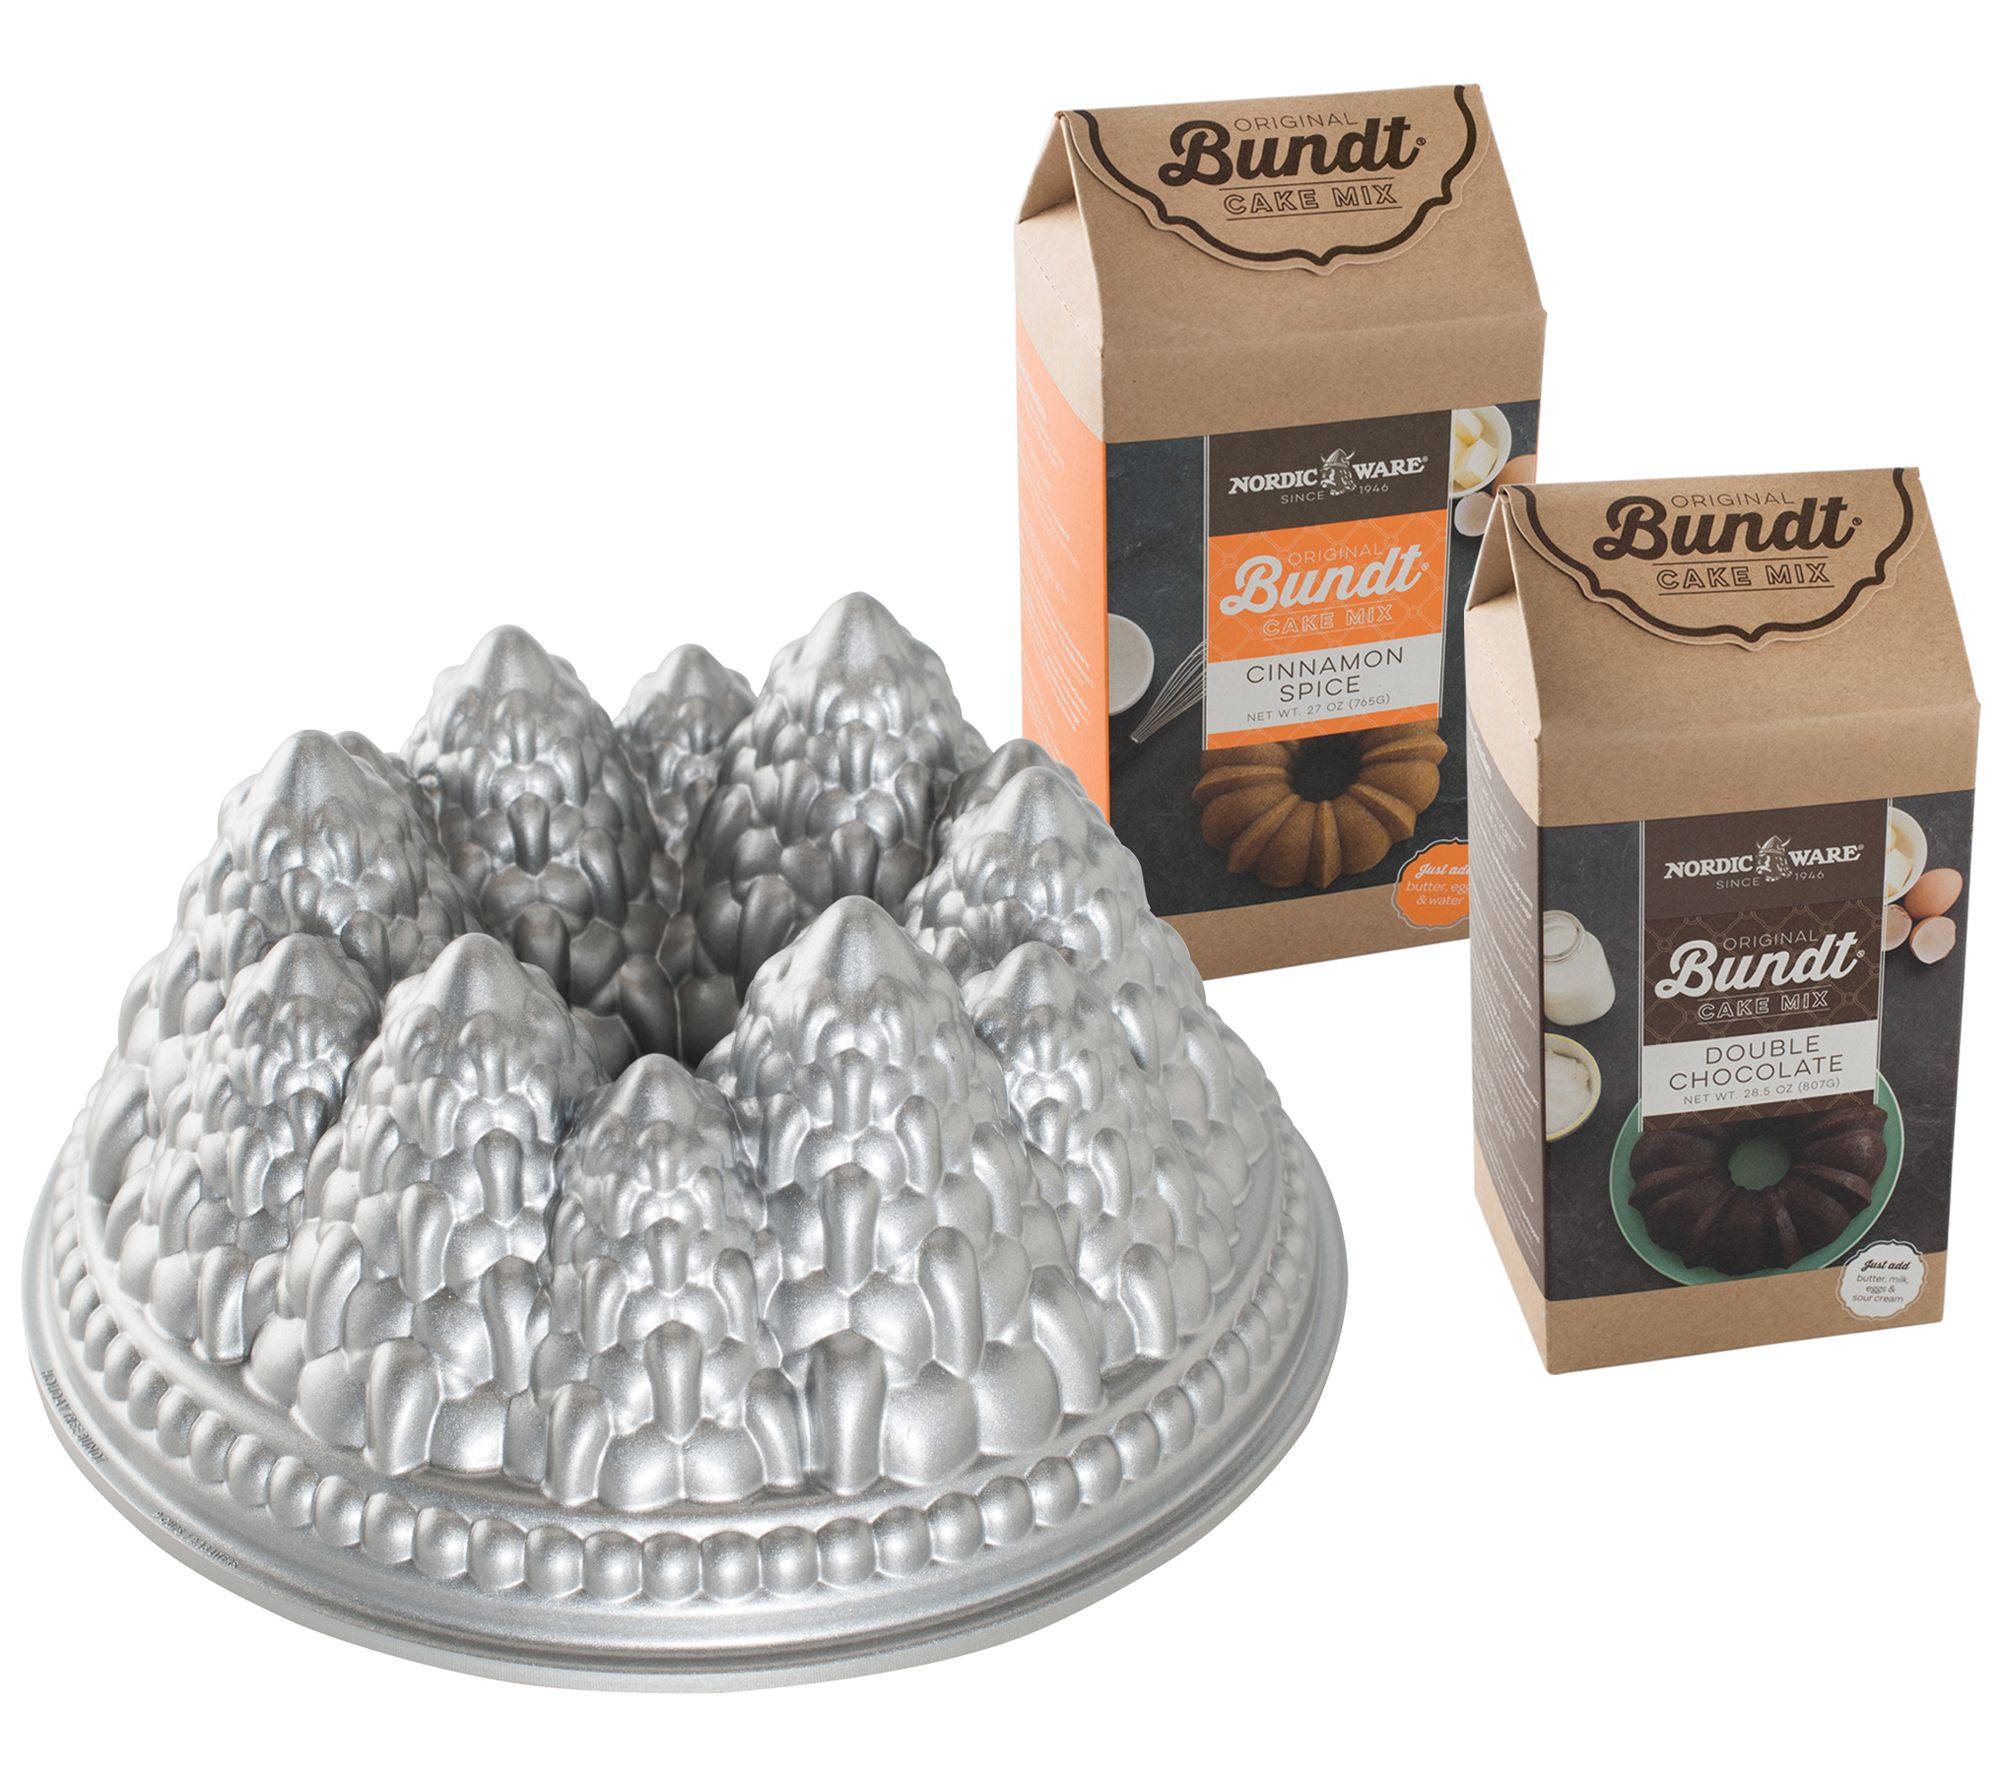 Pine Forest Bundt® Pan - Nordic Ware